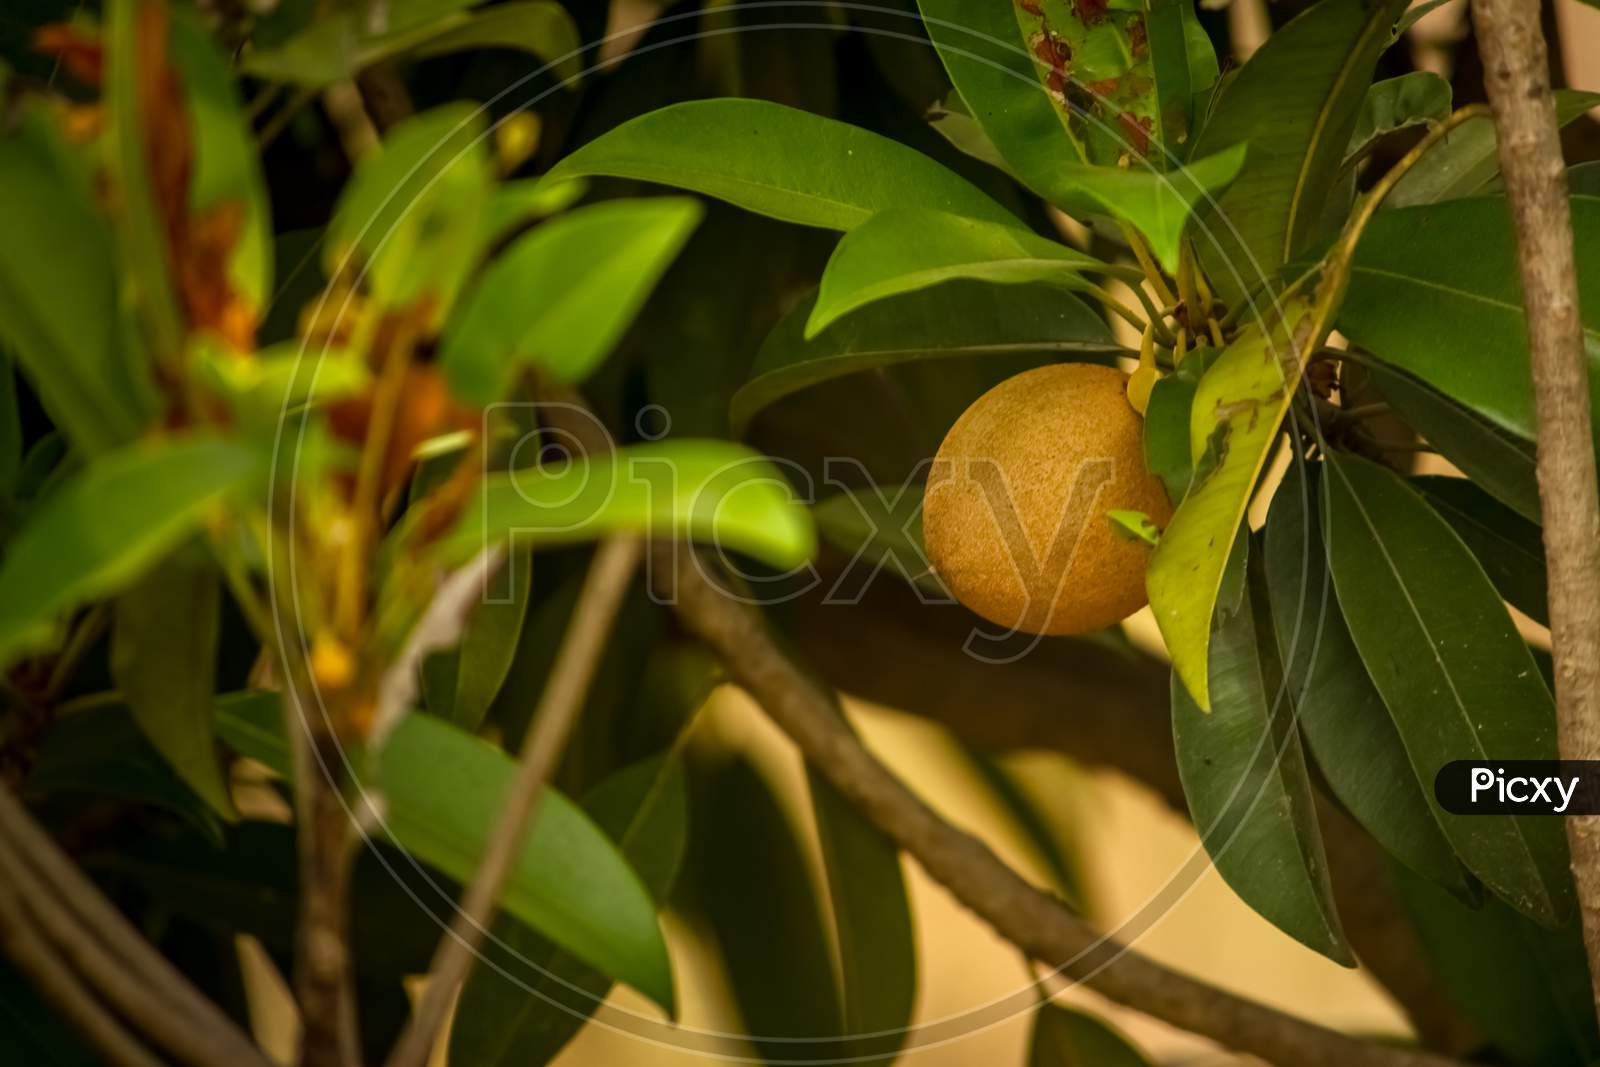 Sapodilla Fruit / Chikoo Fruit On The Tree With Green Leafs On Sapodilla Garden. Manilkara Zapota, Commonly Known As Sapodilla, Sapota, Chikoo, Naseberry, Or Nispero Is A Long-Lived